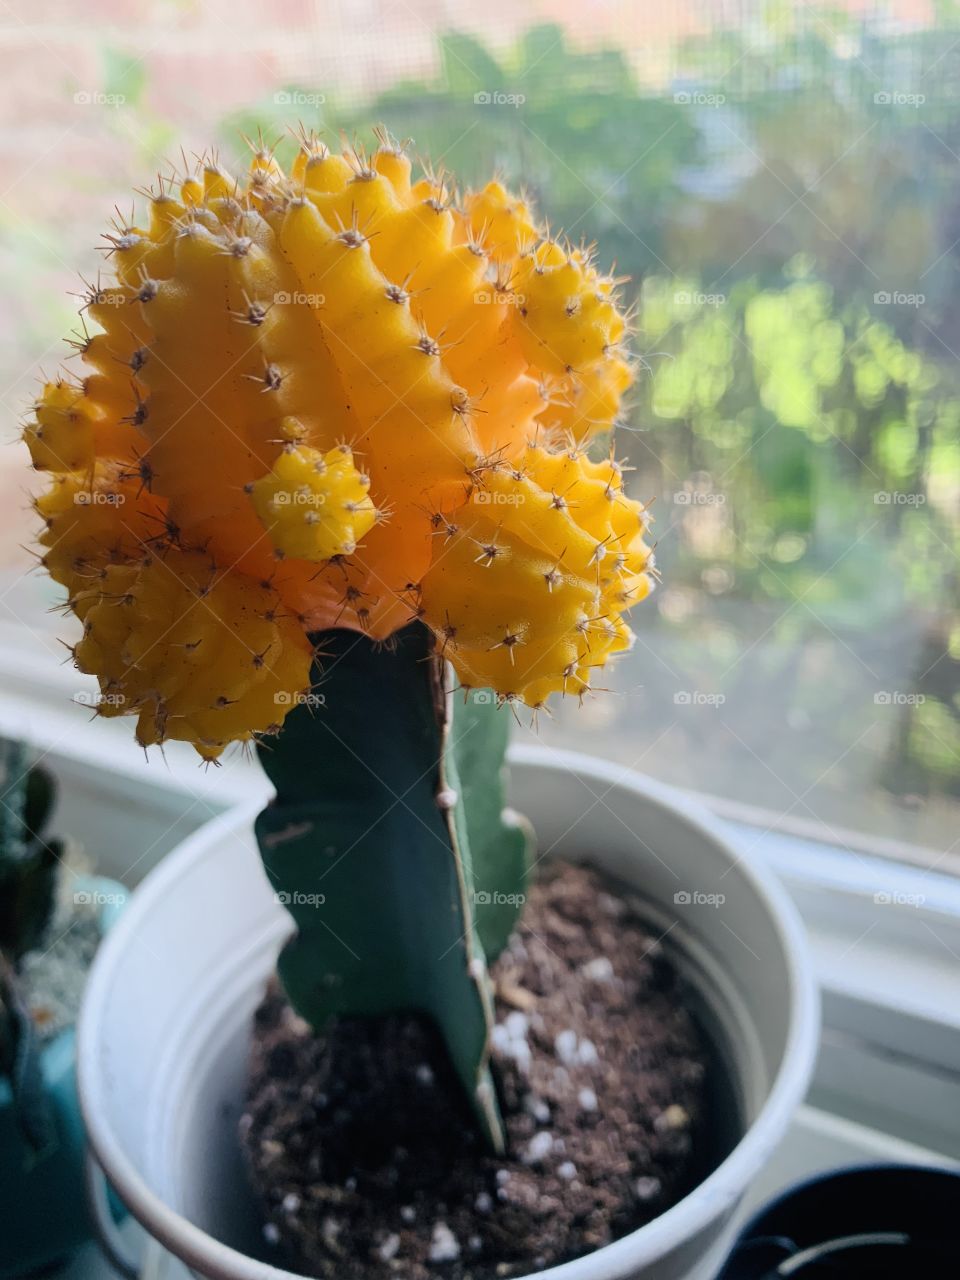 Cute little cactus 